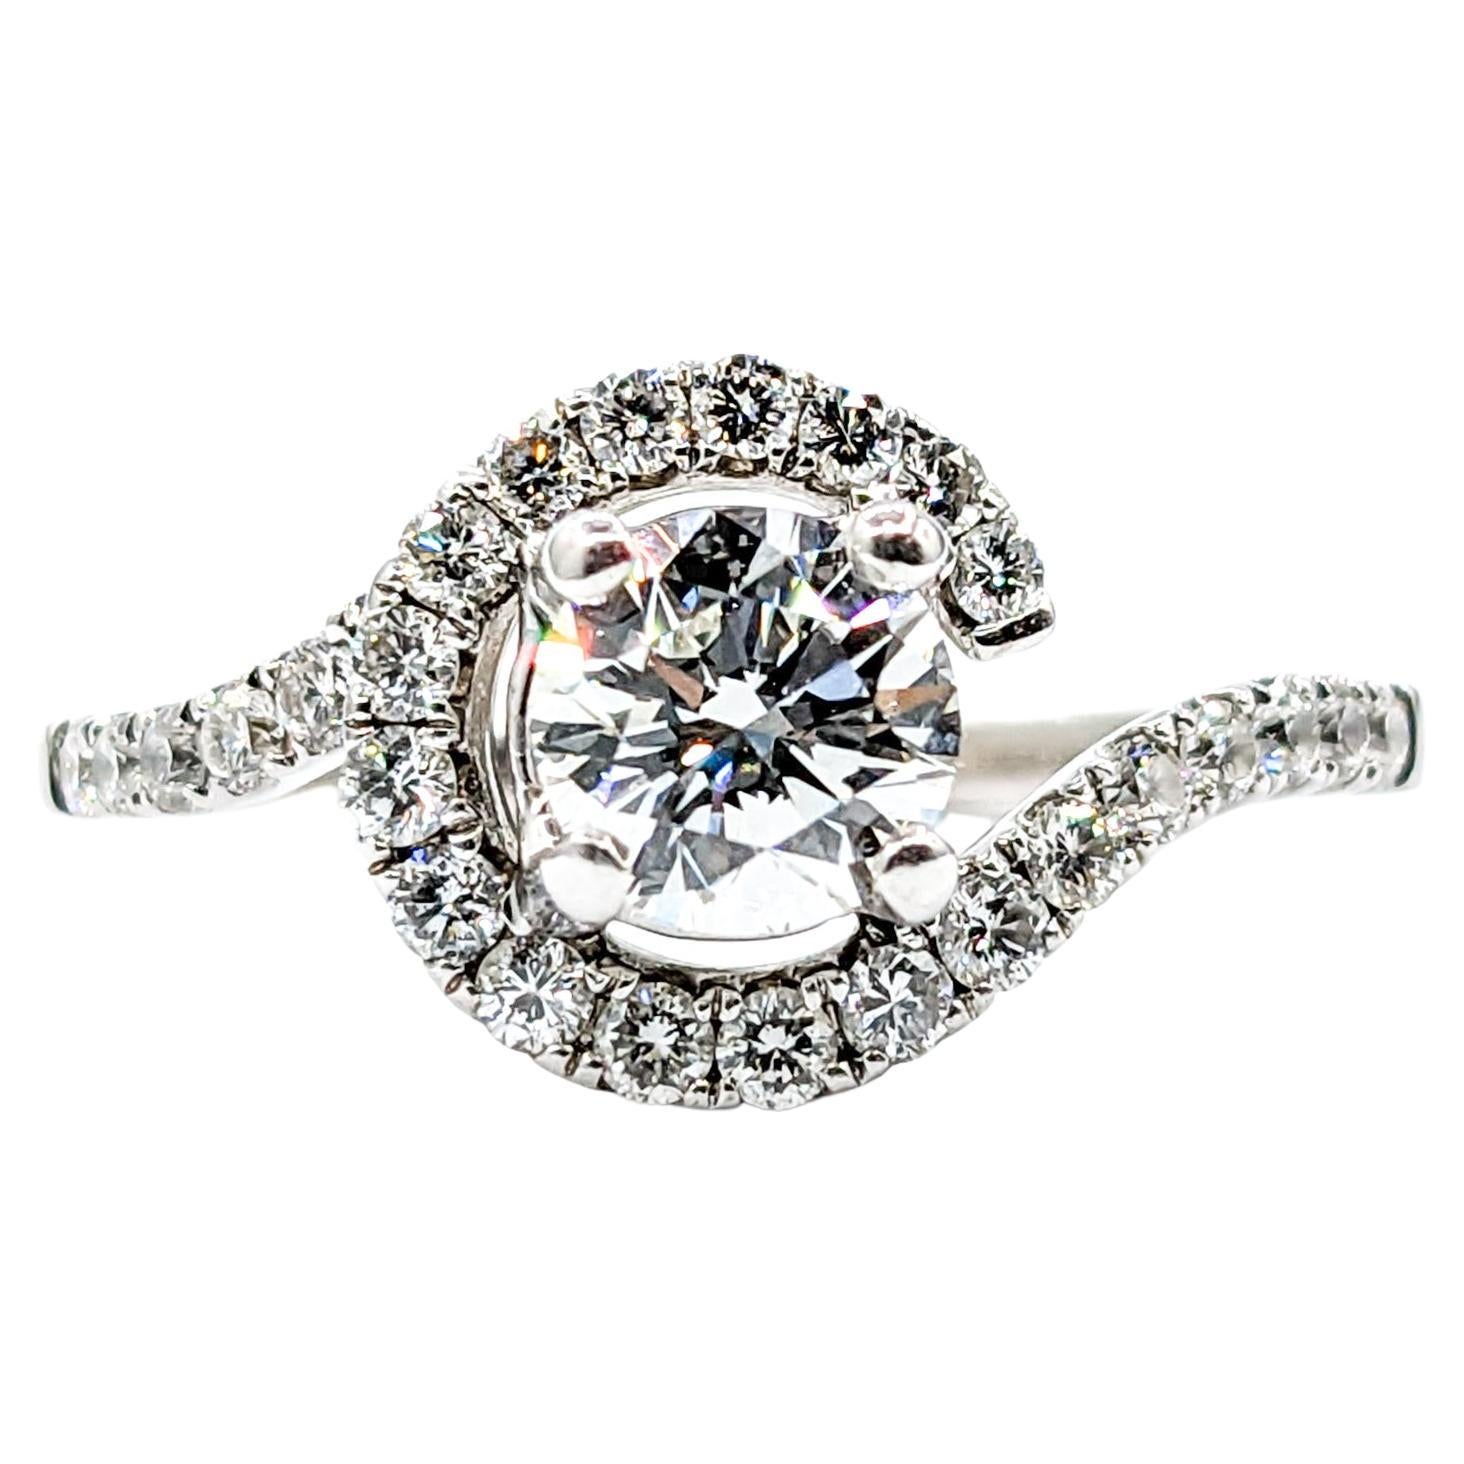 GIA Graded VVS1 Diamond Engagement Ring White Gold 